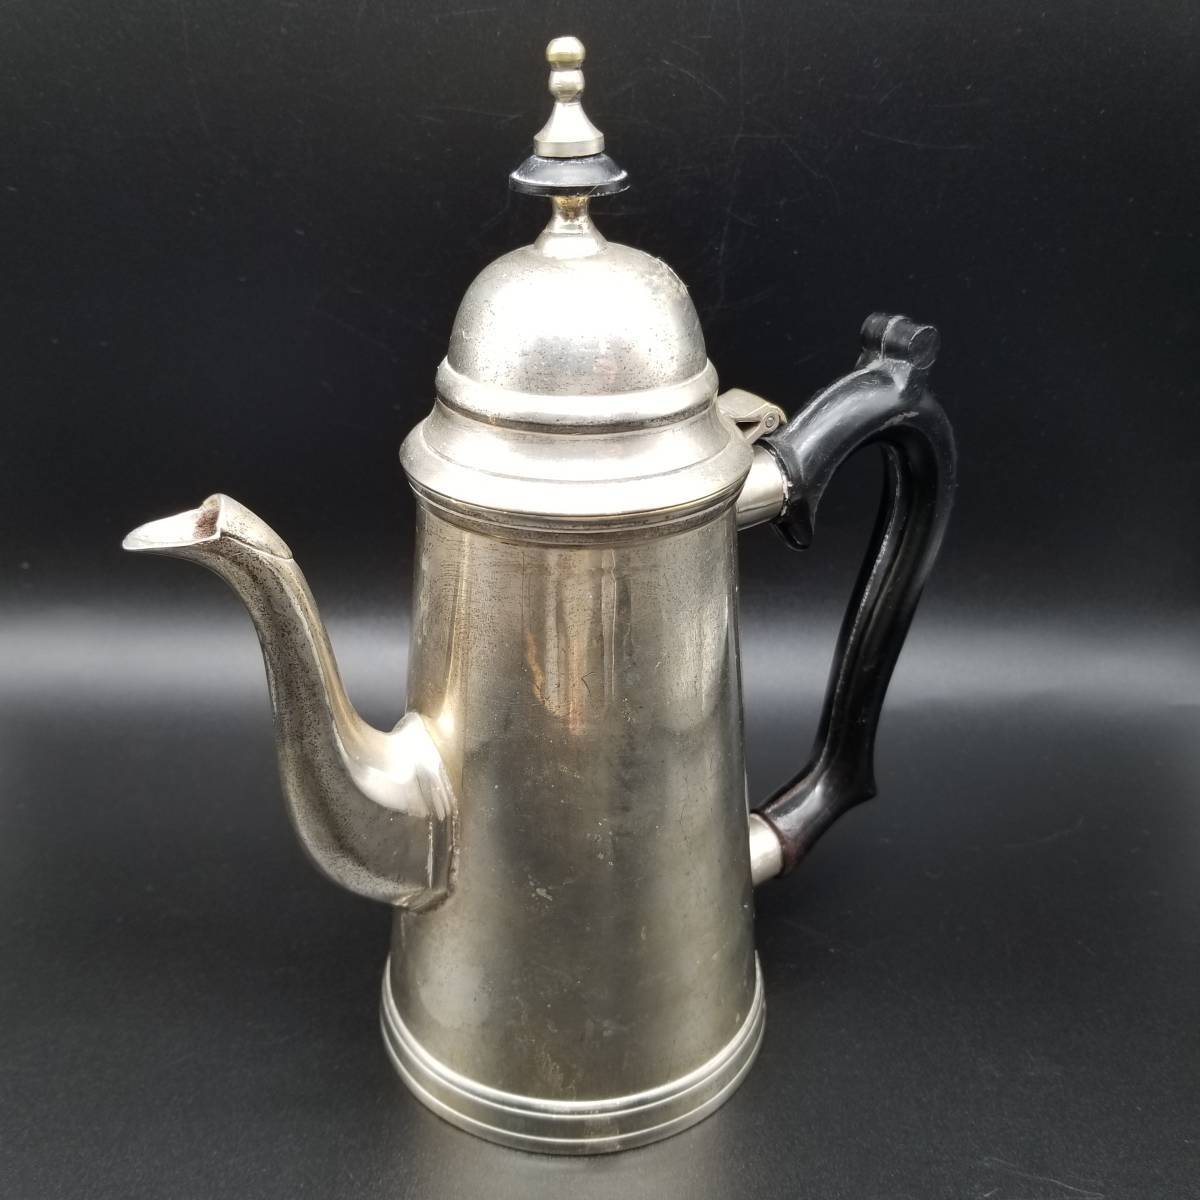 20世紀前半 英国 アンティーク シルバーメッキ コーヒーポット 銀メッキ ヴィクトリアスタイル 紅茶 ティーポット やかん